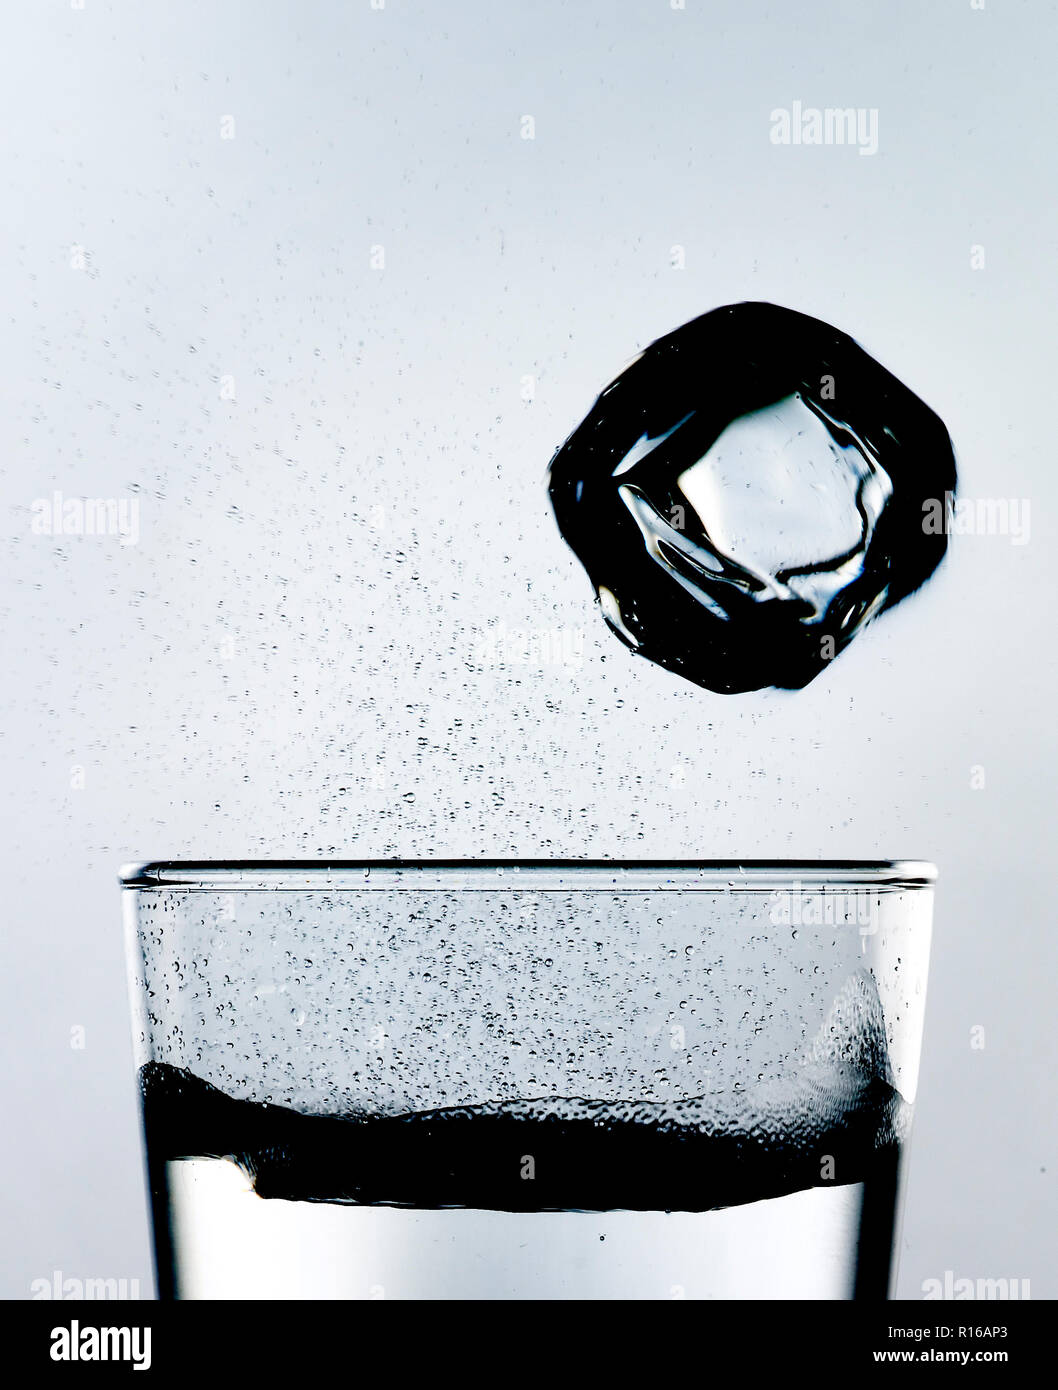 Cubo de hielo cayendo hacia una copa de espumoso líquido efervescente, Foto de estudio, high key Foto de stock